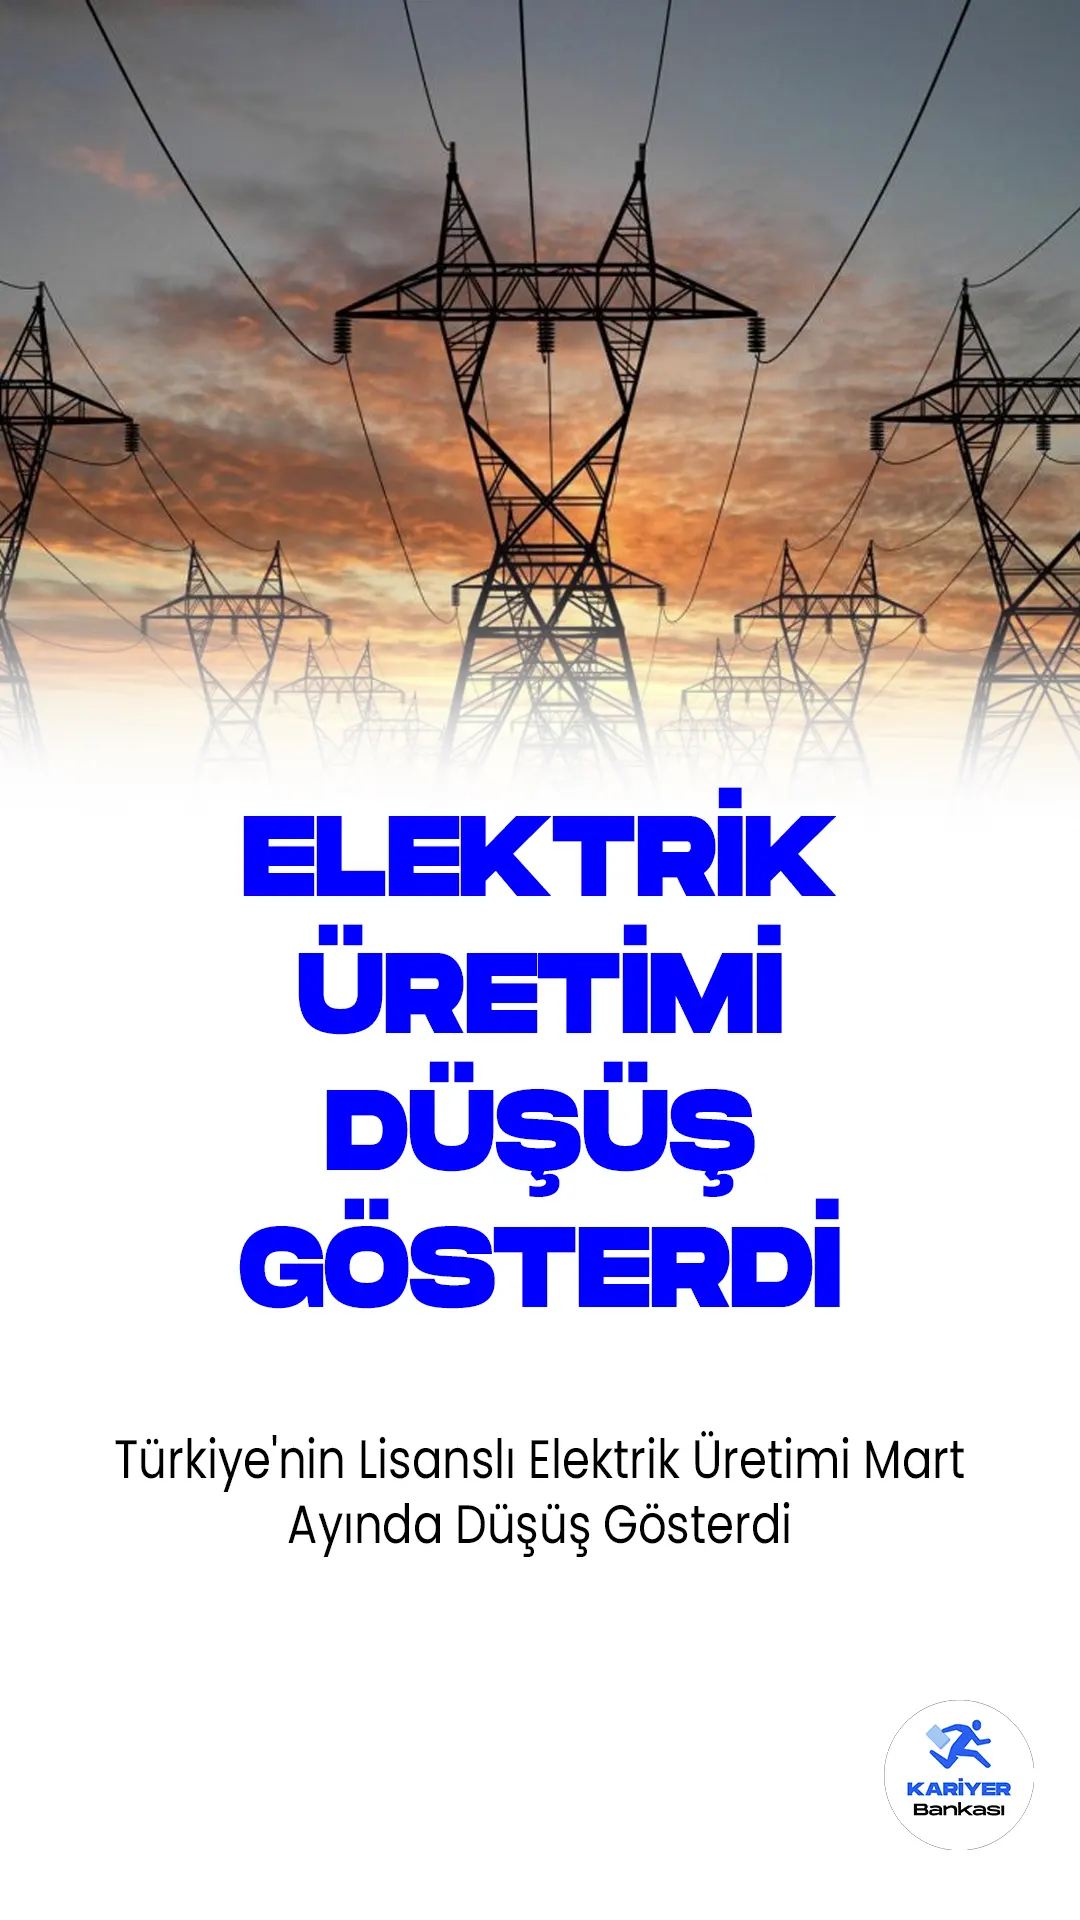 Türkiye'nin lisanslı elektrik üretimi, Mart ayında geçen yılın aynı dönemine göre %8.4'lük bir düşüş yaşayarak 25 milyon 321 bin 499 megavatsaate geriledi. Enerji Piyasası Düzenleme Kurumu'nun Elektrik Piyasası Sektör Raporu'na göre, Mart ayında lisanslı elektrik üretiminin %22.6'sı ithal kömür santralleri, %21.2'si doğal gaz santralleri, %21.2'si hidroelektrik santralleri, %12.9'u linyit santralleri ve %12.1'i rüzgar santralleri tarafından gerçekleştirildi. Diğer enerji kaynakları ise jeotermal, biyokütle, taş kömürü, güneş, asfaltit ve fuel-oil olarak sıralandı.